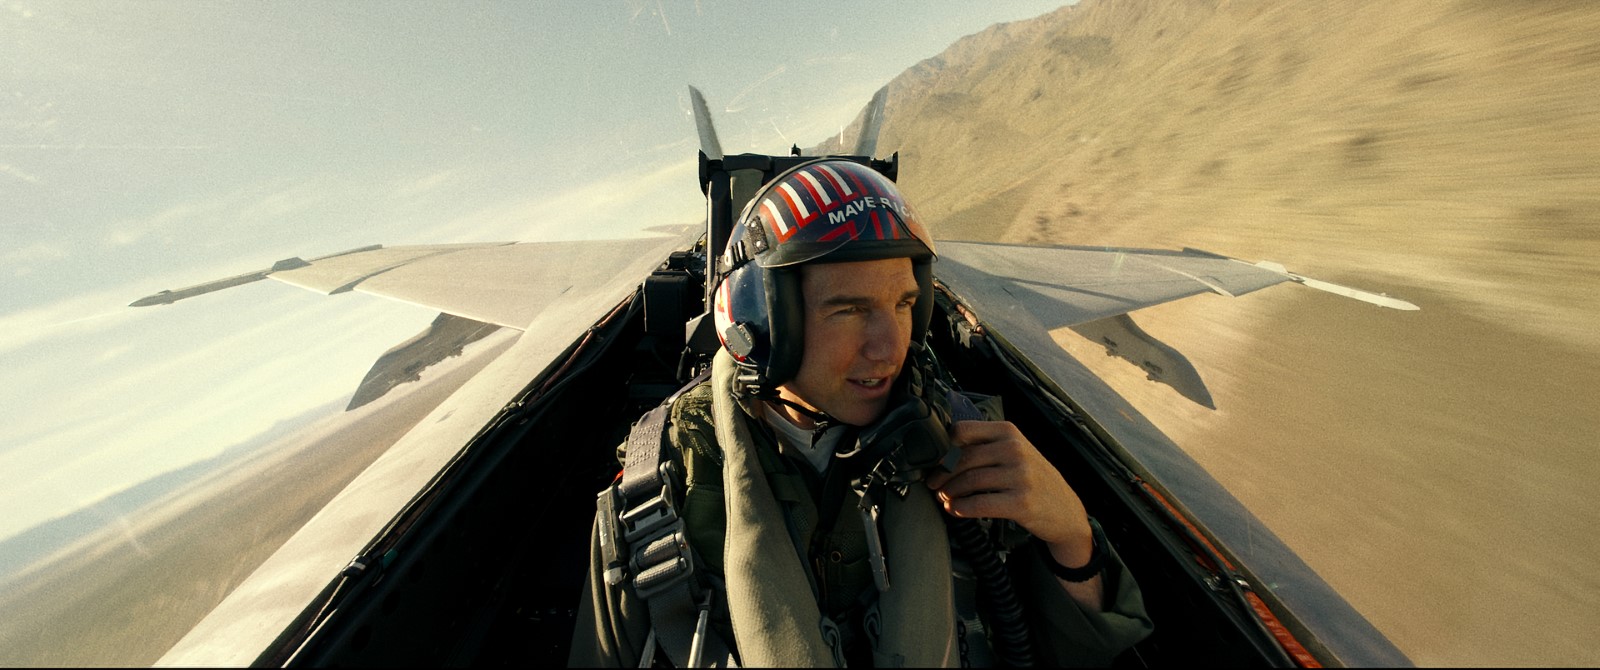 Top Gun Maverick : le film devient le plus grand succès de Tom Cruise en France